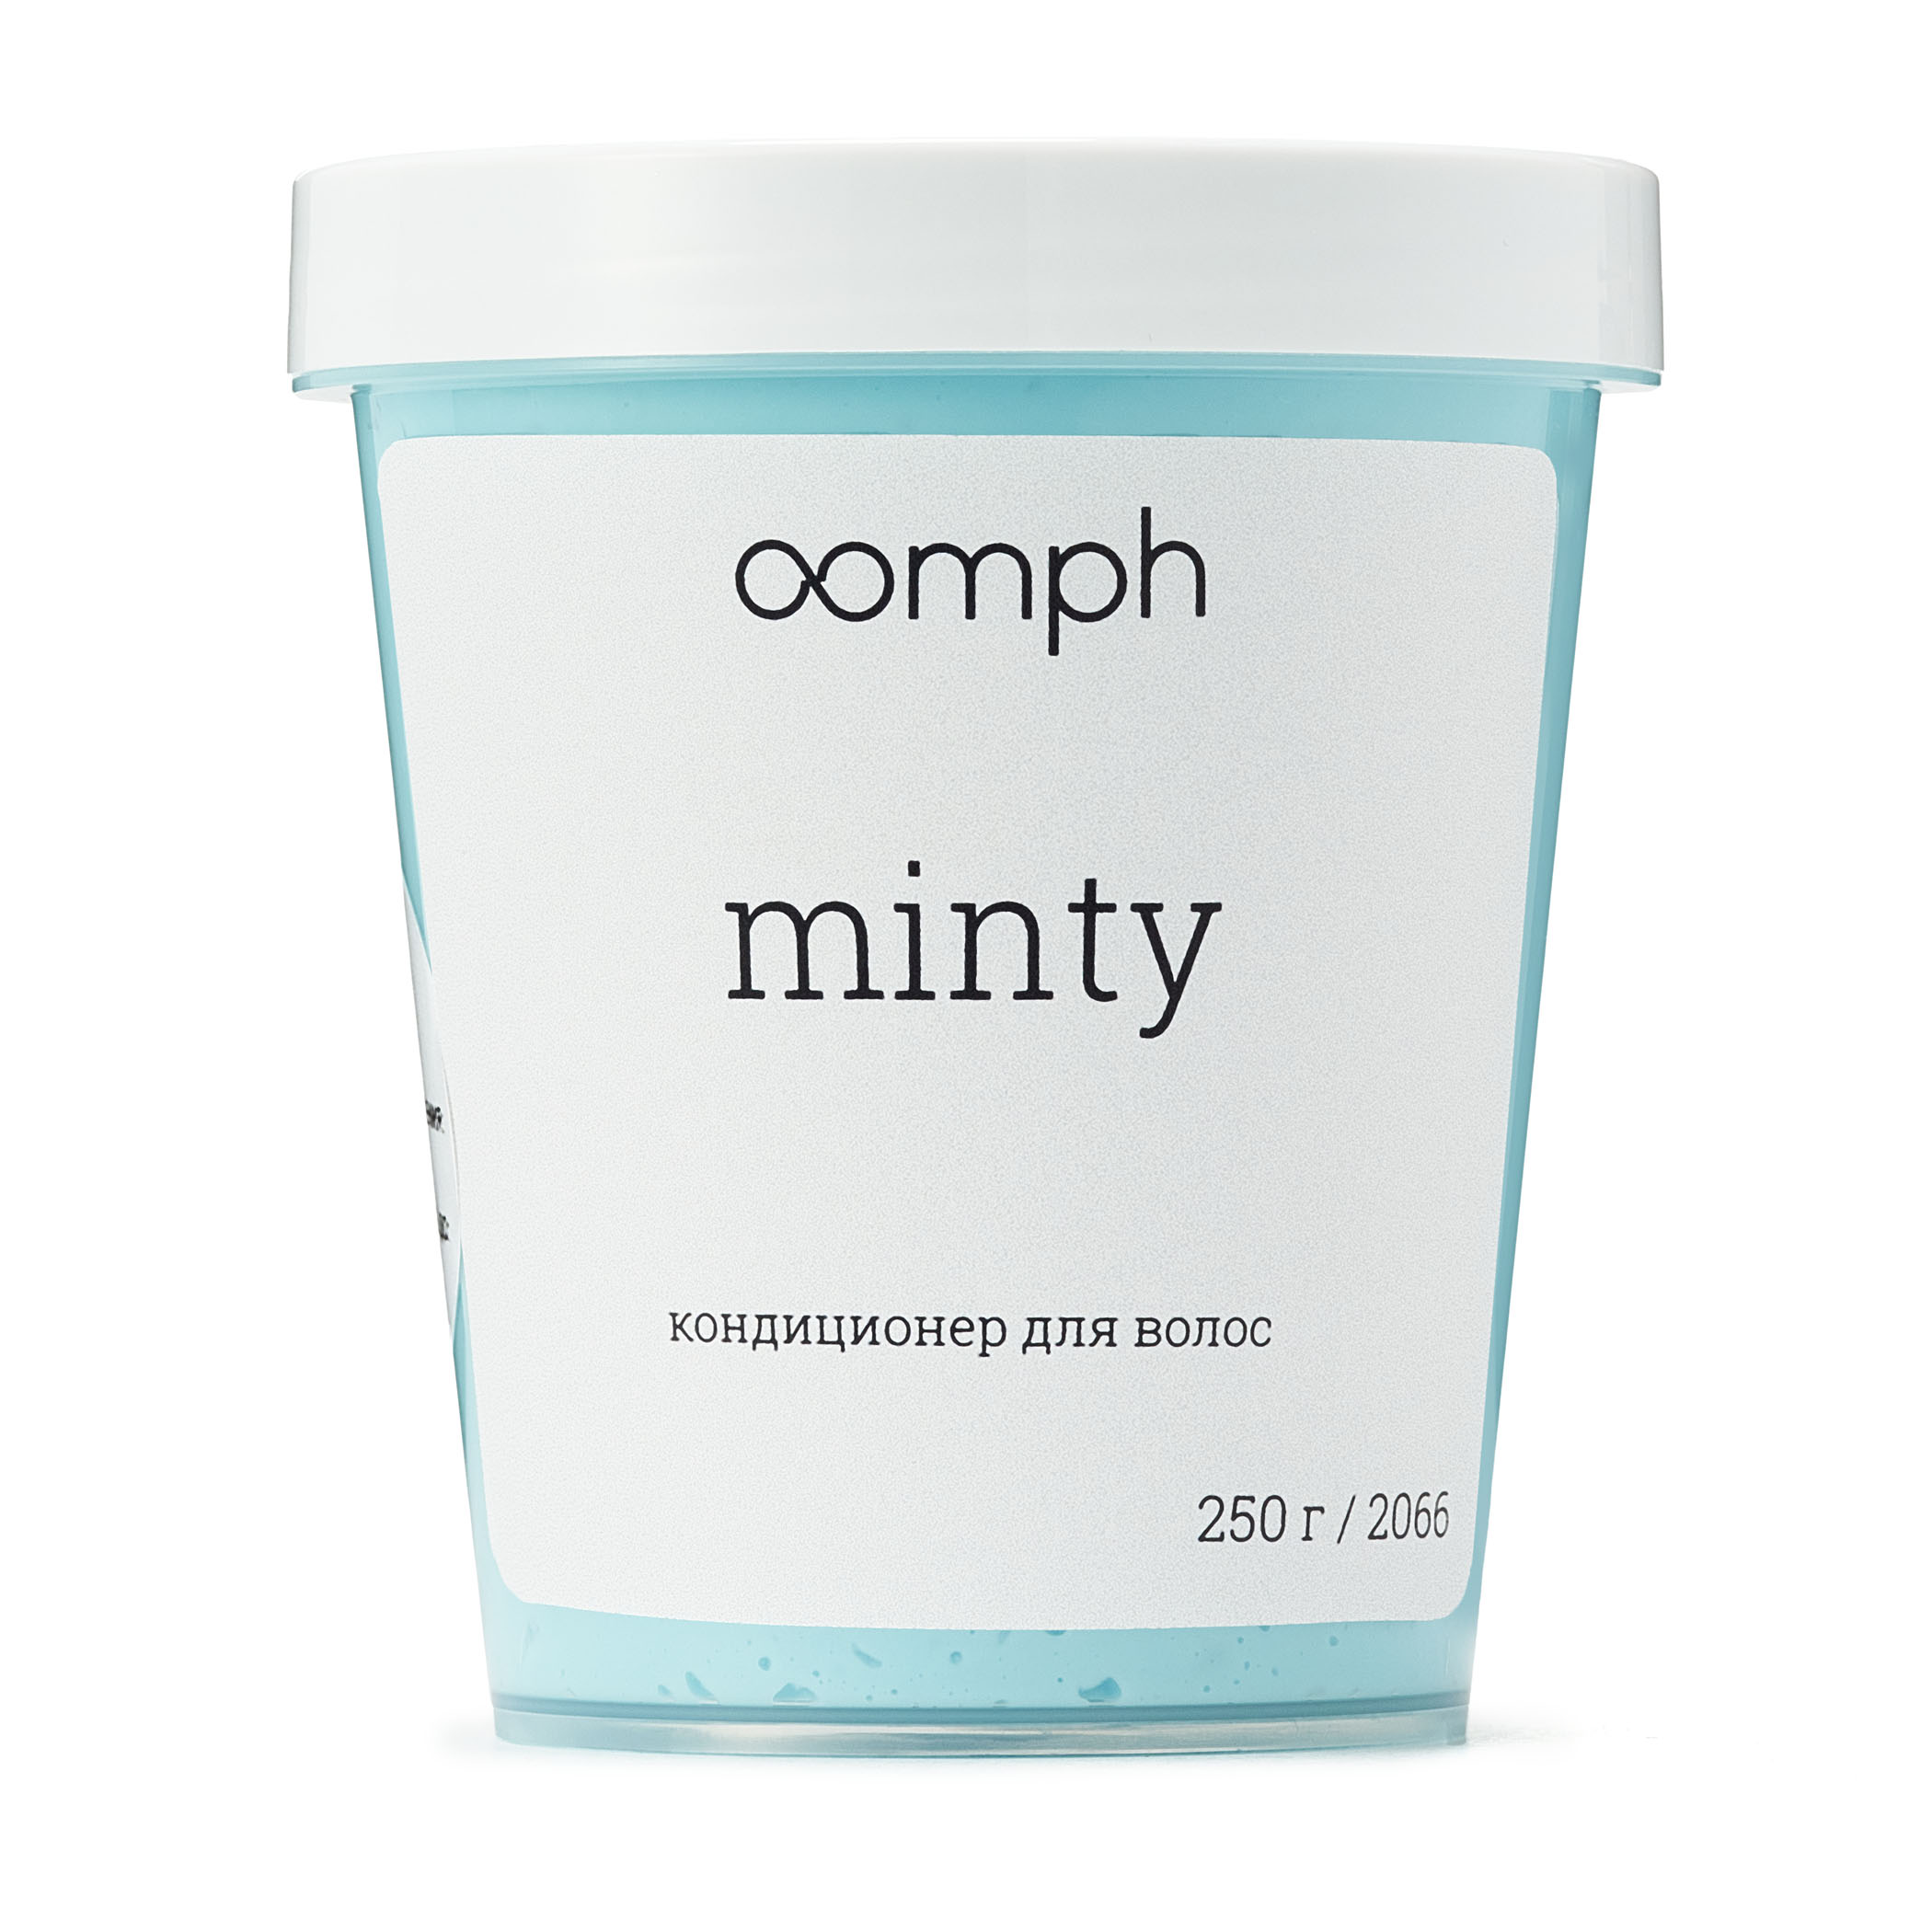 Кондиционер для волос Oomph Minty 250г